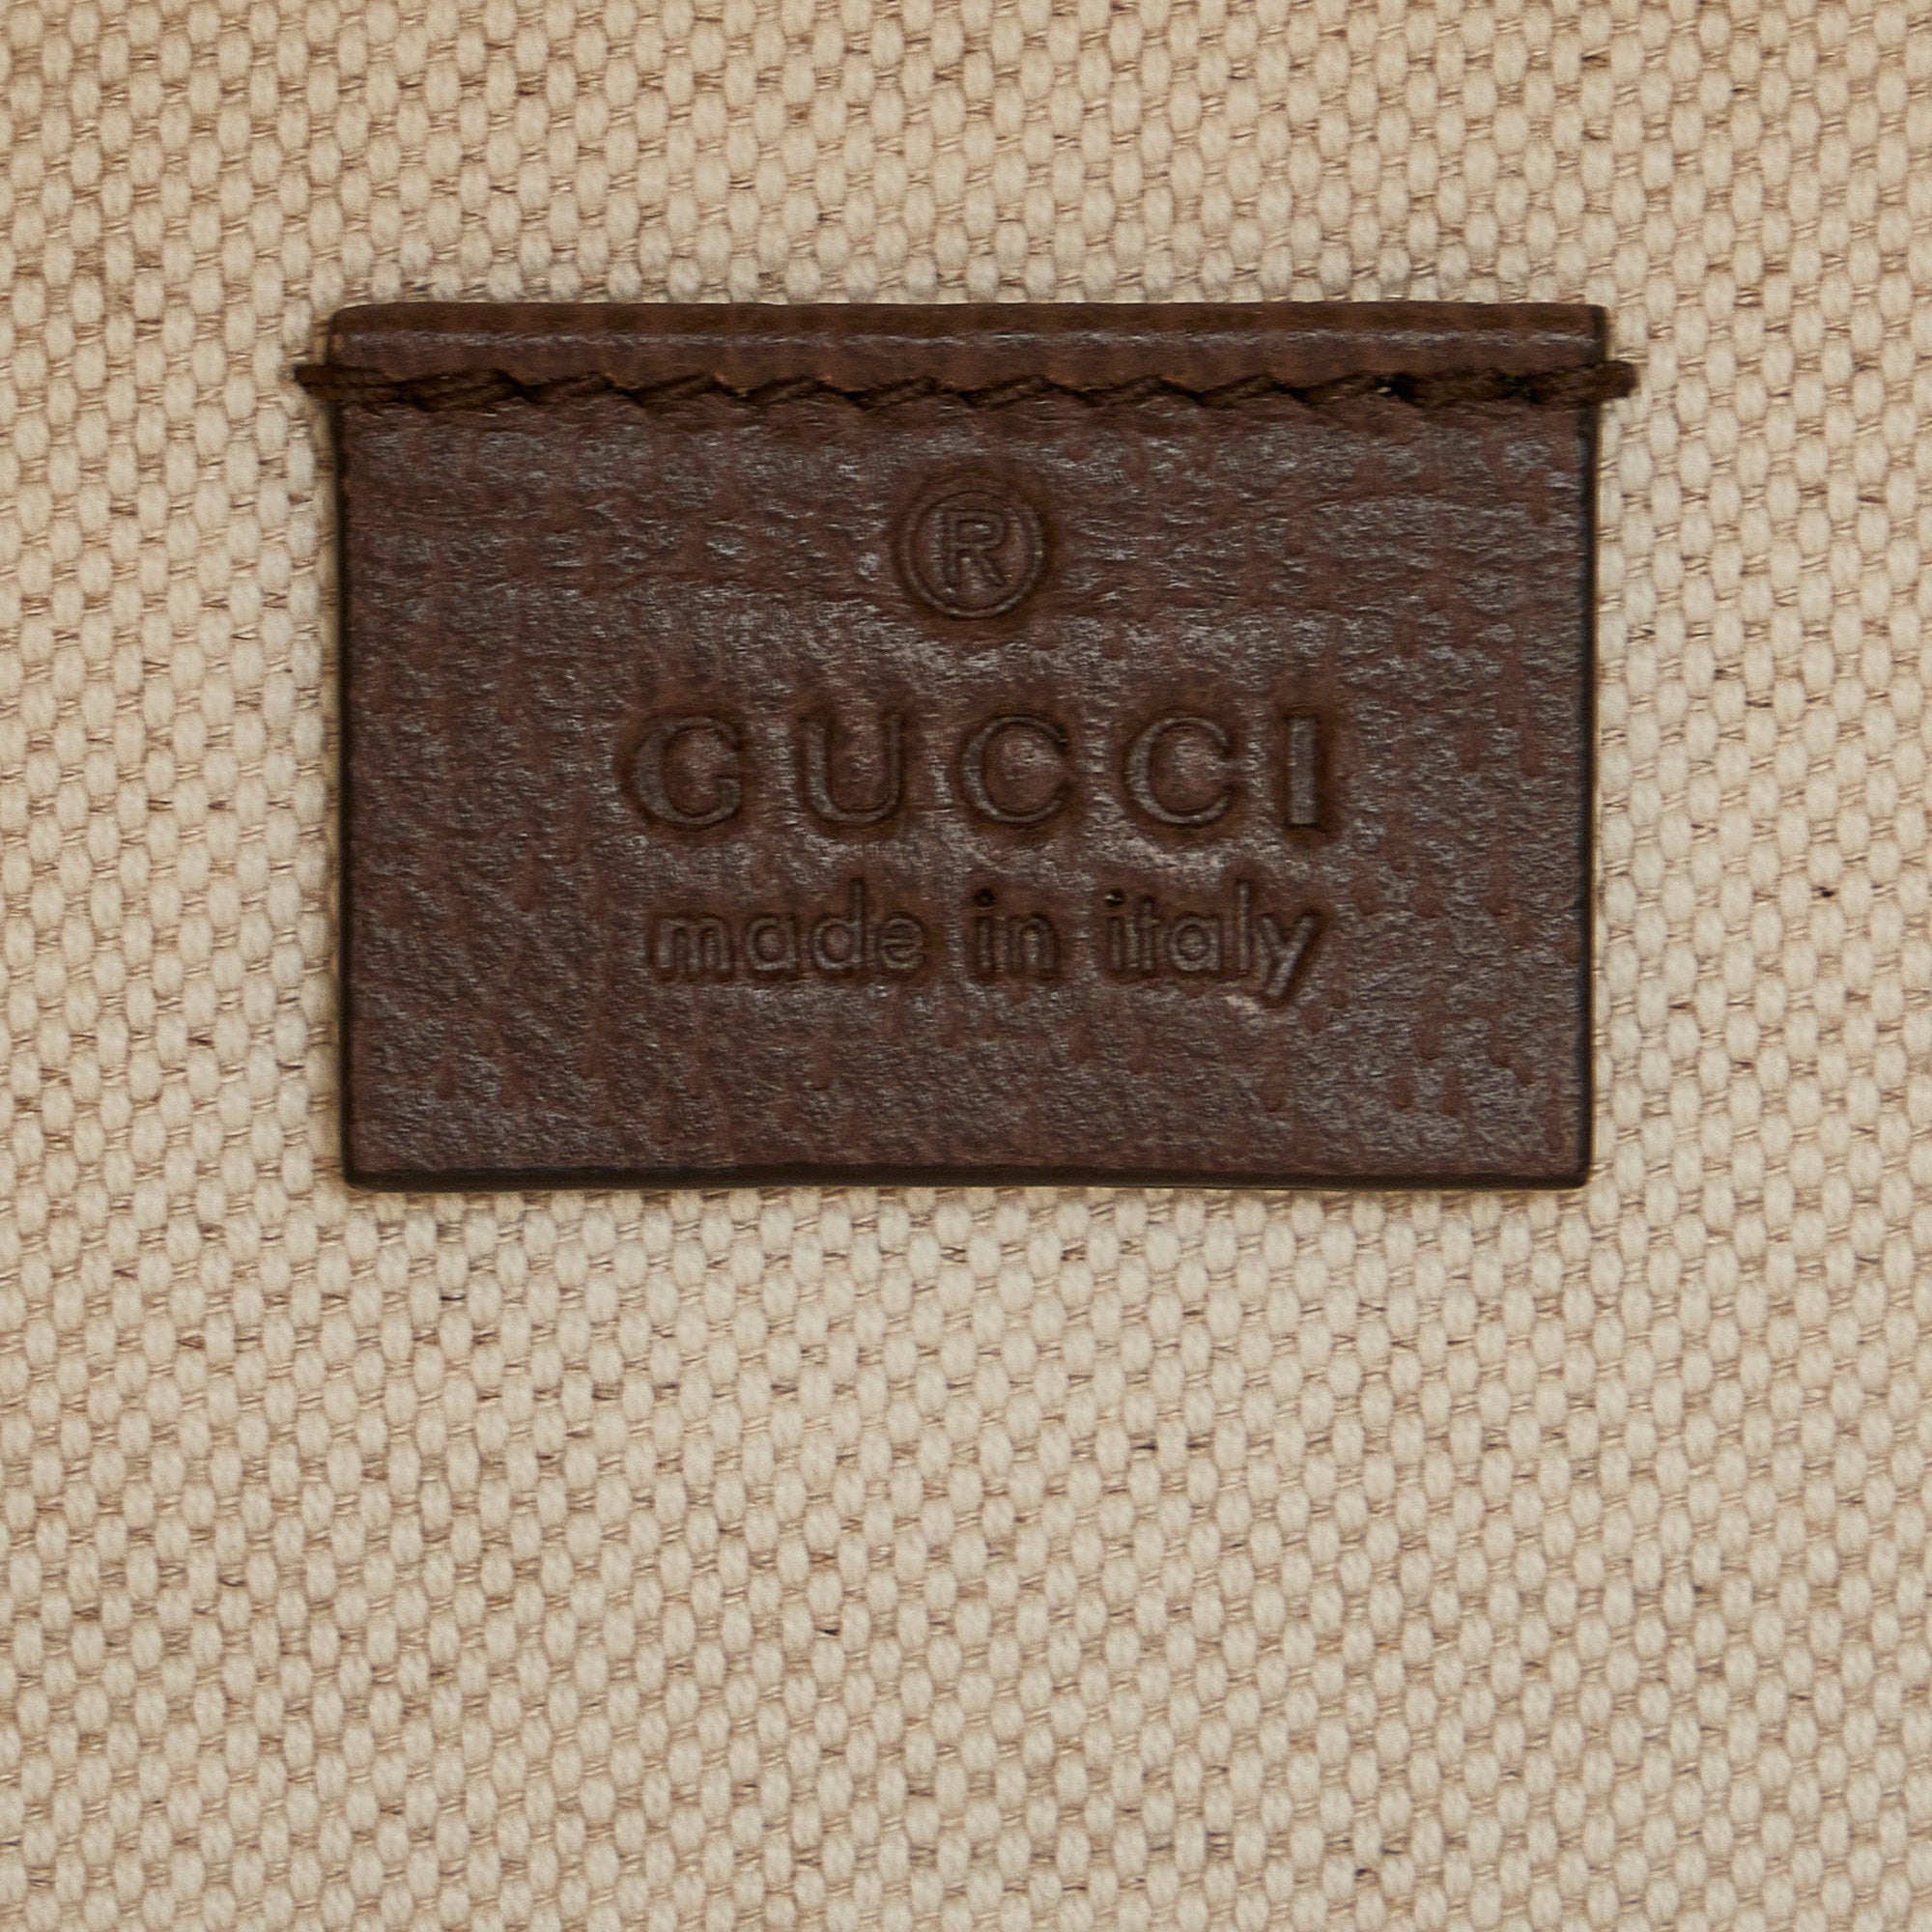 White Gucci Small Web Foldable Tote Satchel – Designer Revival